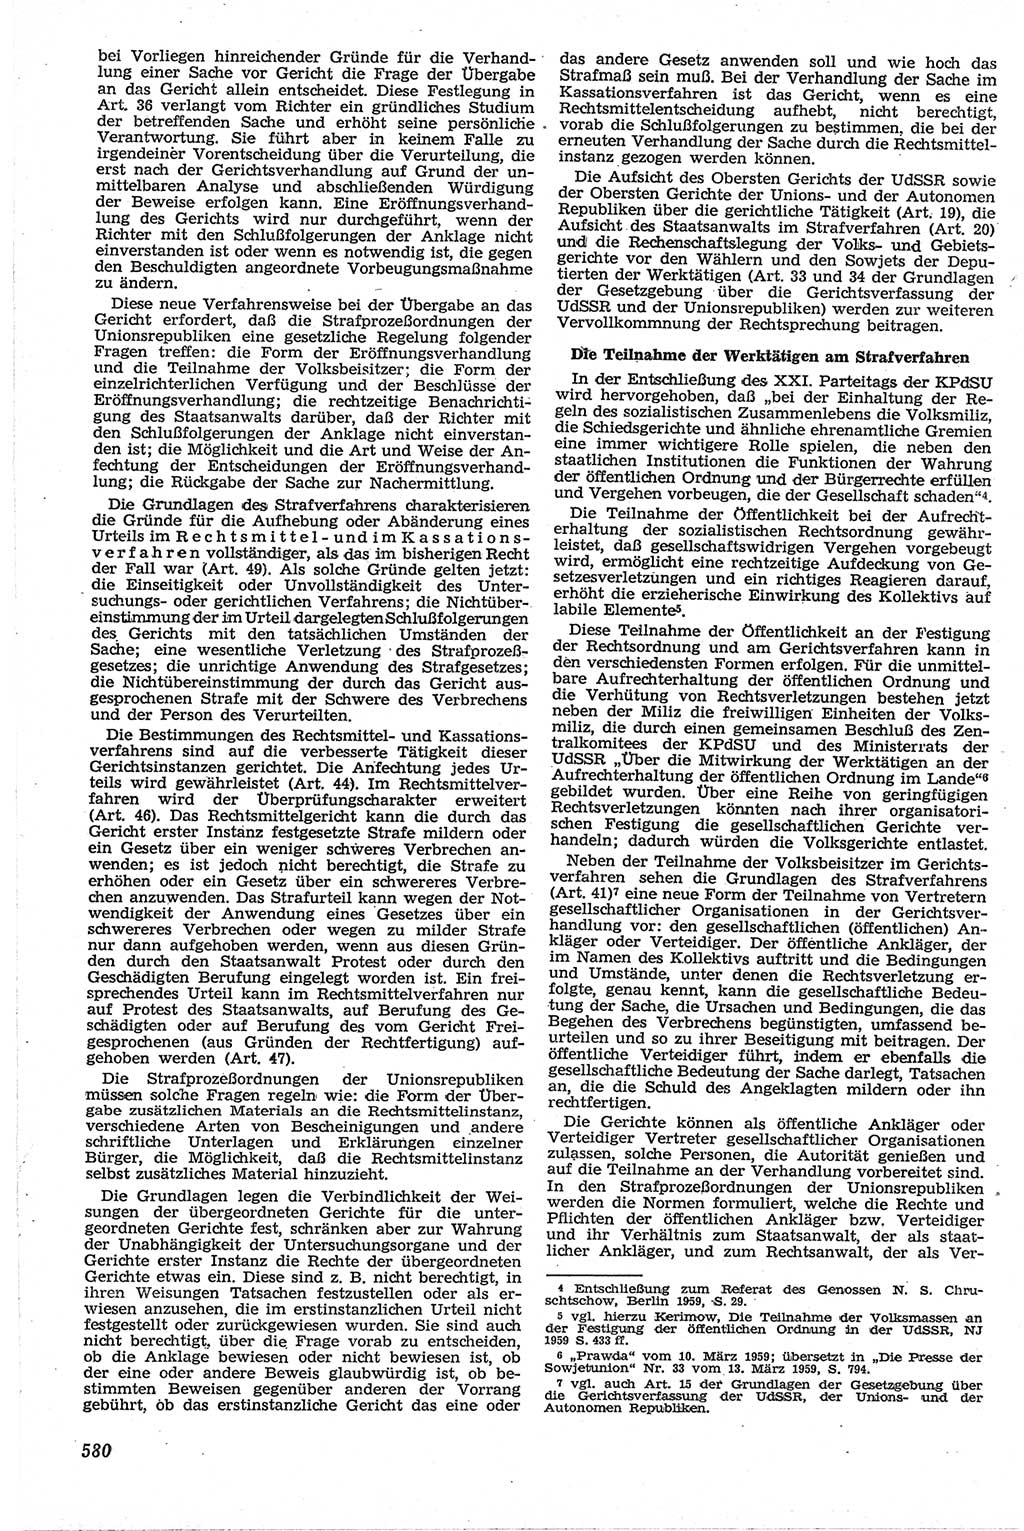 Neue Justiz (NJ), Zeitschrift für Recht und Rechtswissenschaft [Deutsche Demokratische Republik (DDR)], 13. Jahrgang 1959, Seite 580 (NJ DDR 1959, S. 580)